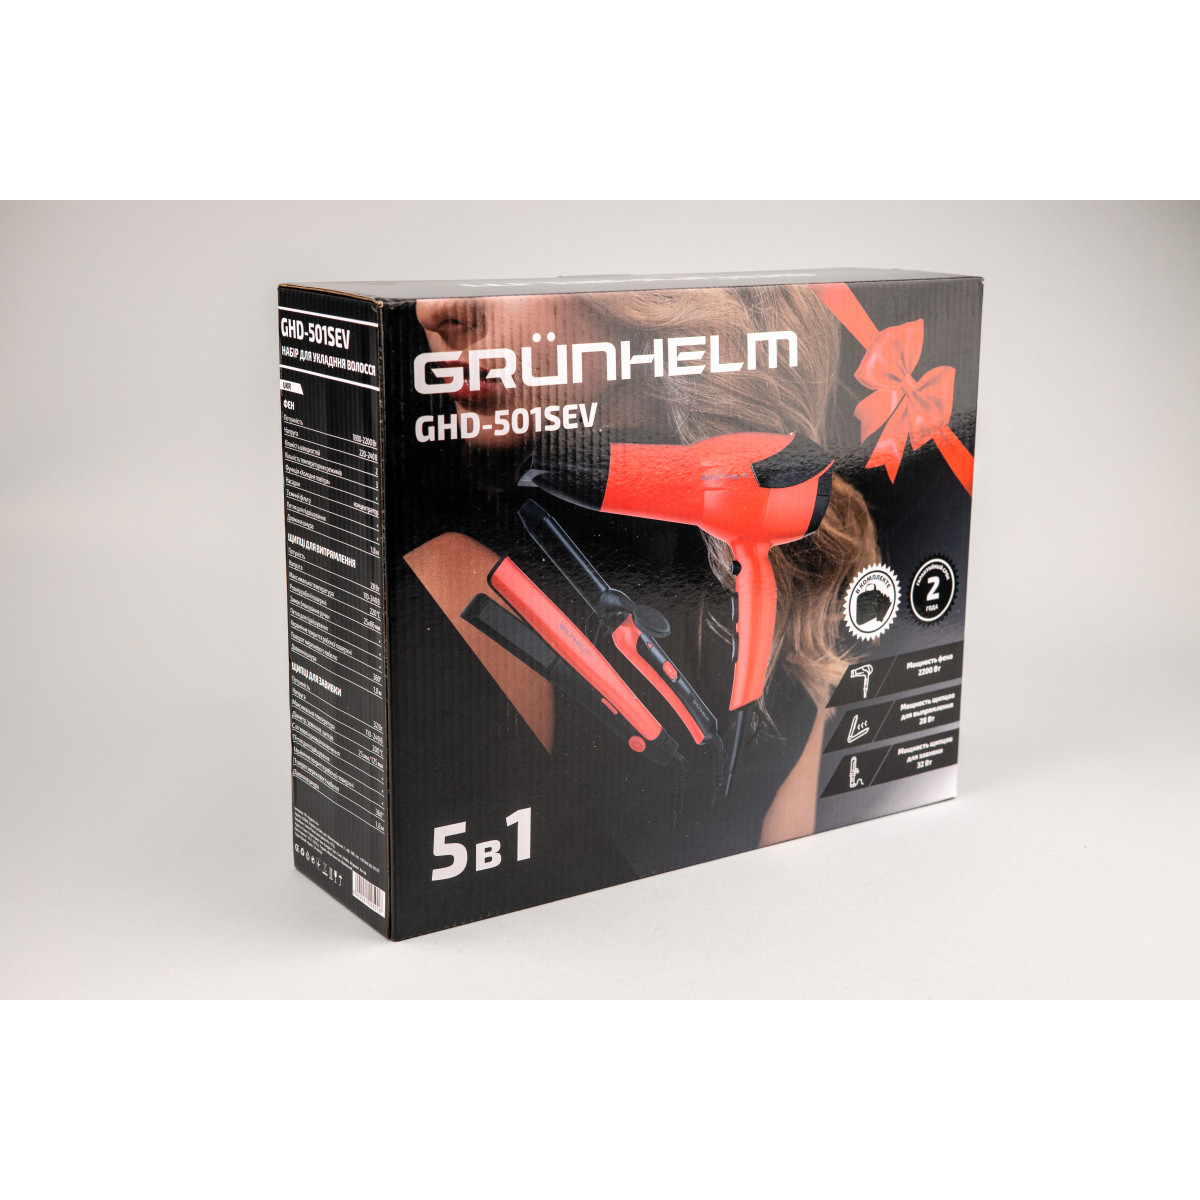 Набір для укладки волосся GHD-501SEV Grunhelm